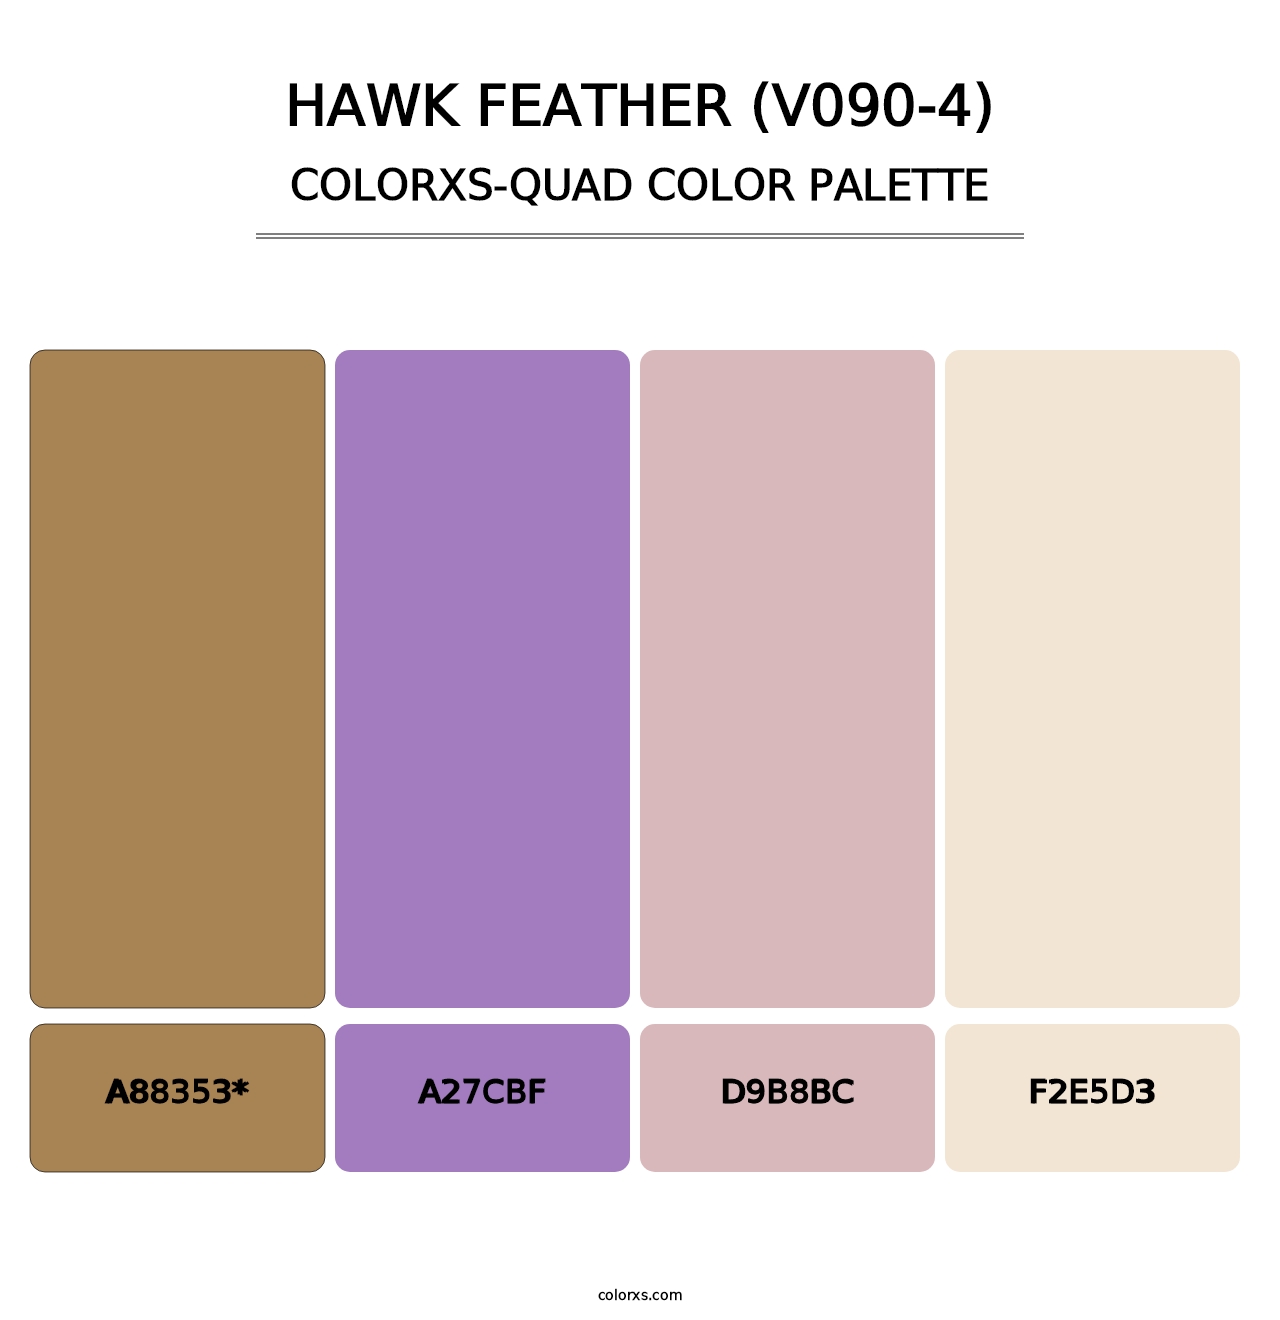 Hawk Feather (V090-4) - Colorxs Quad Palette